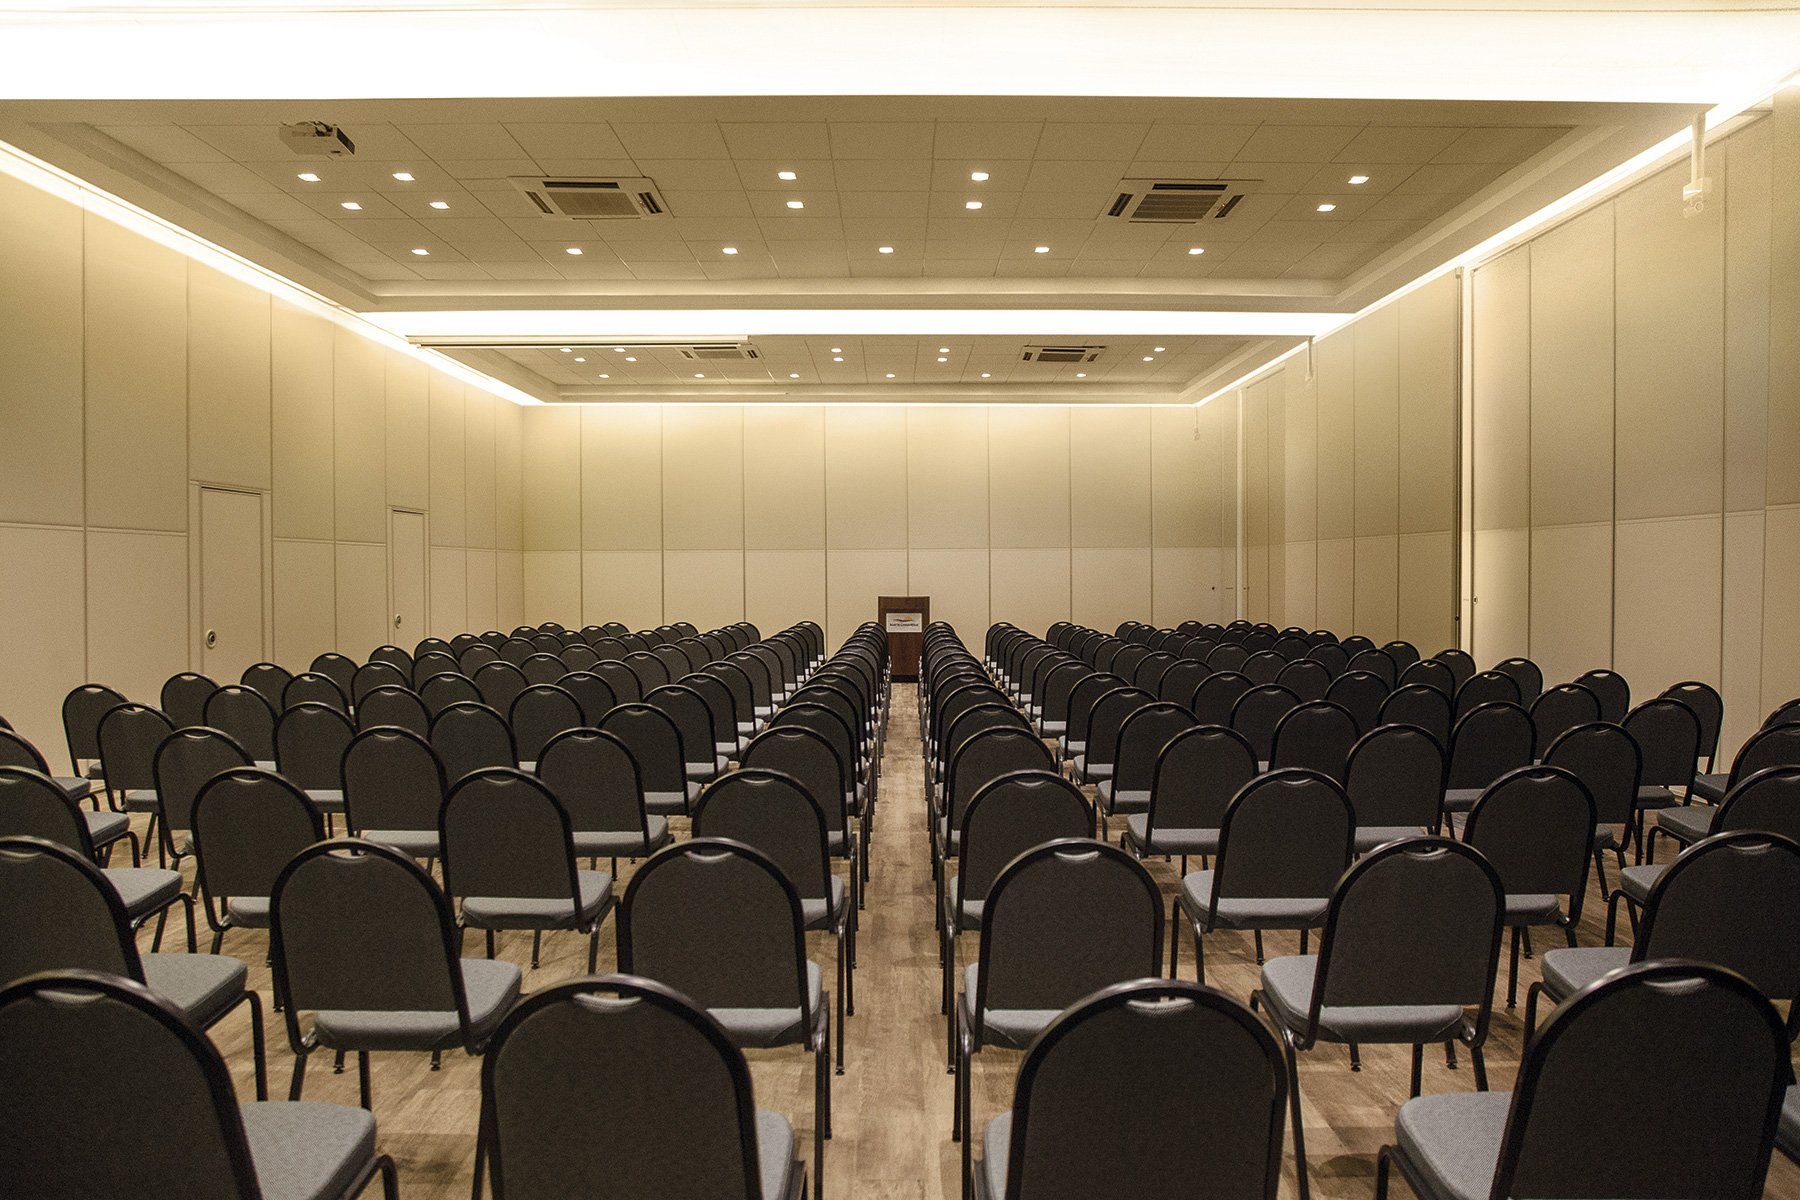 Fileiras de cadeiras pretas estão alinhadas em uma grande sala.